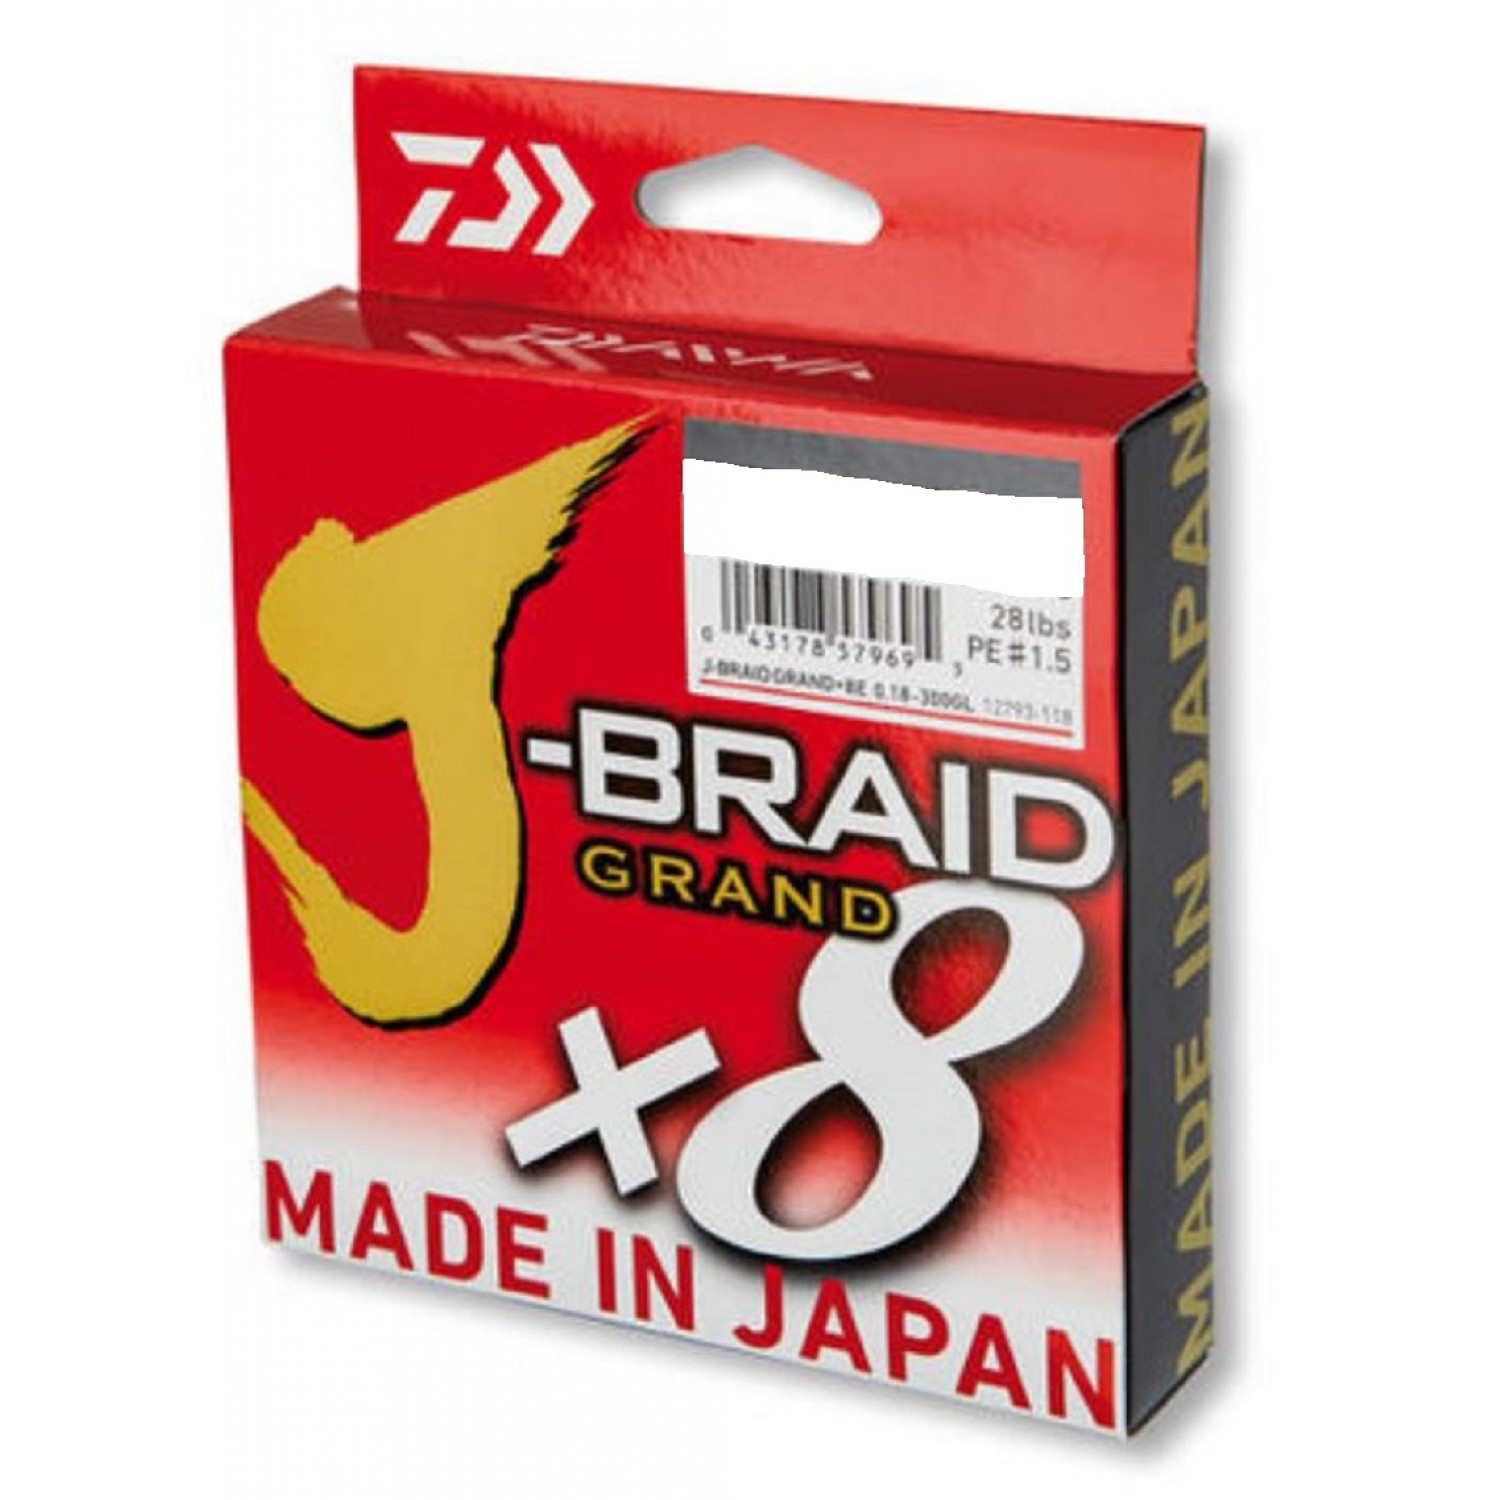 Daiwa J-Braid Grand 8-Braid, 1500m, multicolor, braided fishing line